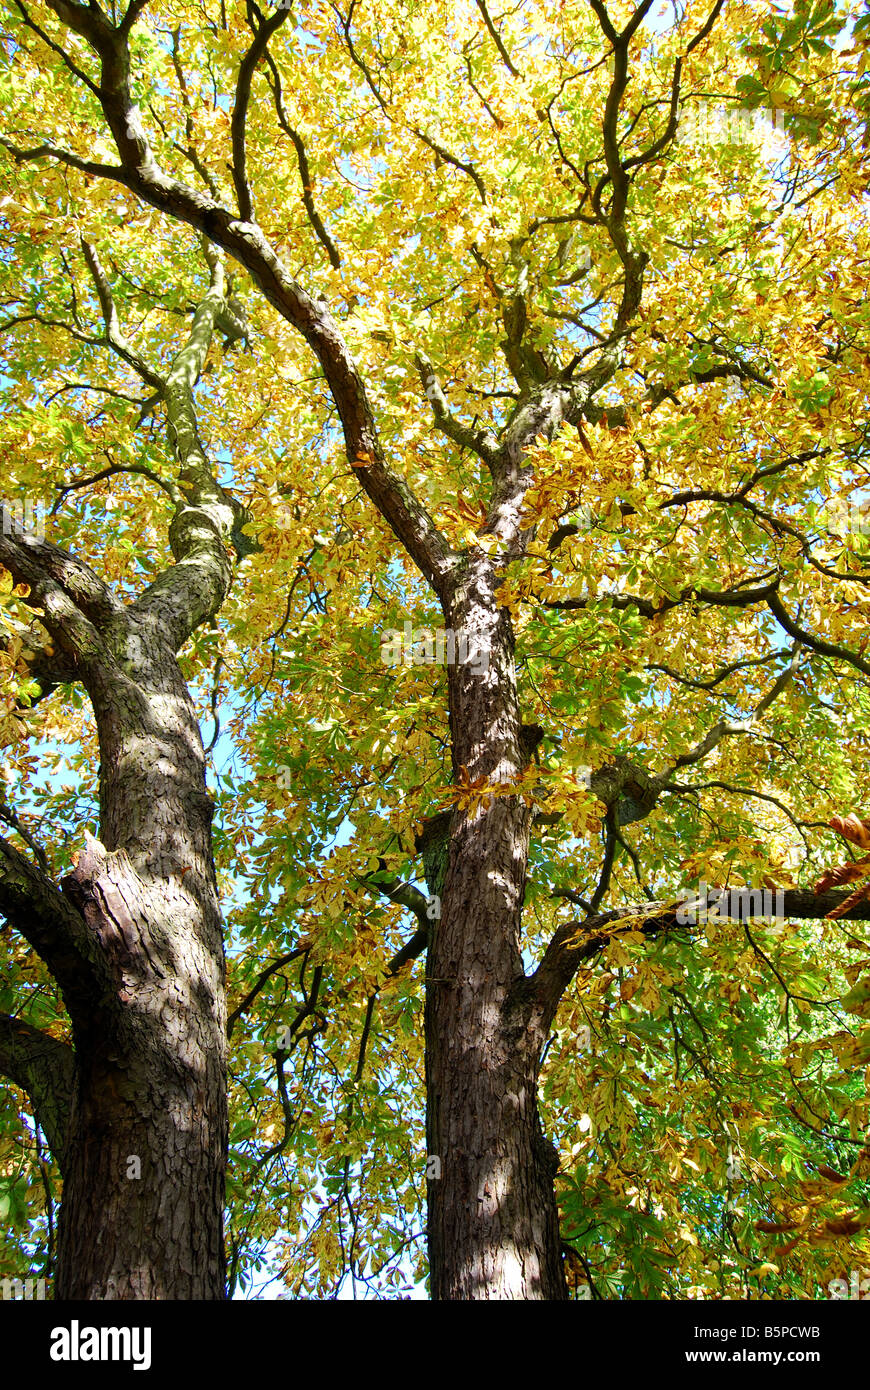 Ippocastano di albero in albero in autunno, Virginia Water, Surrey, England, Regno Unito Foto Stock